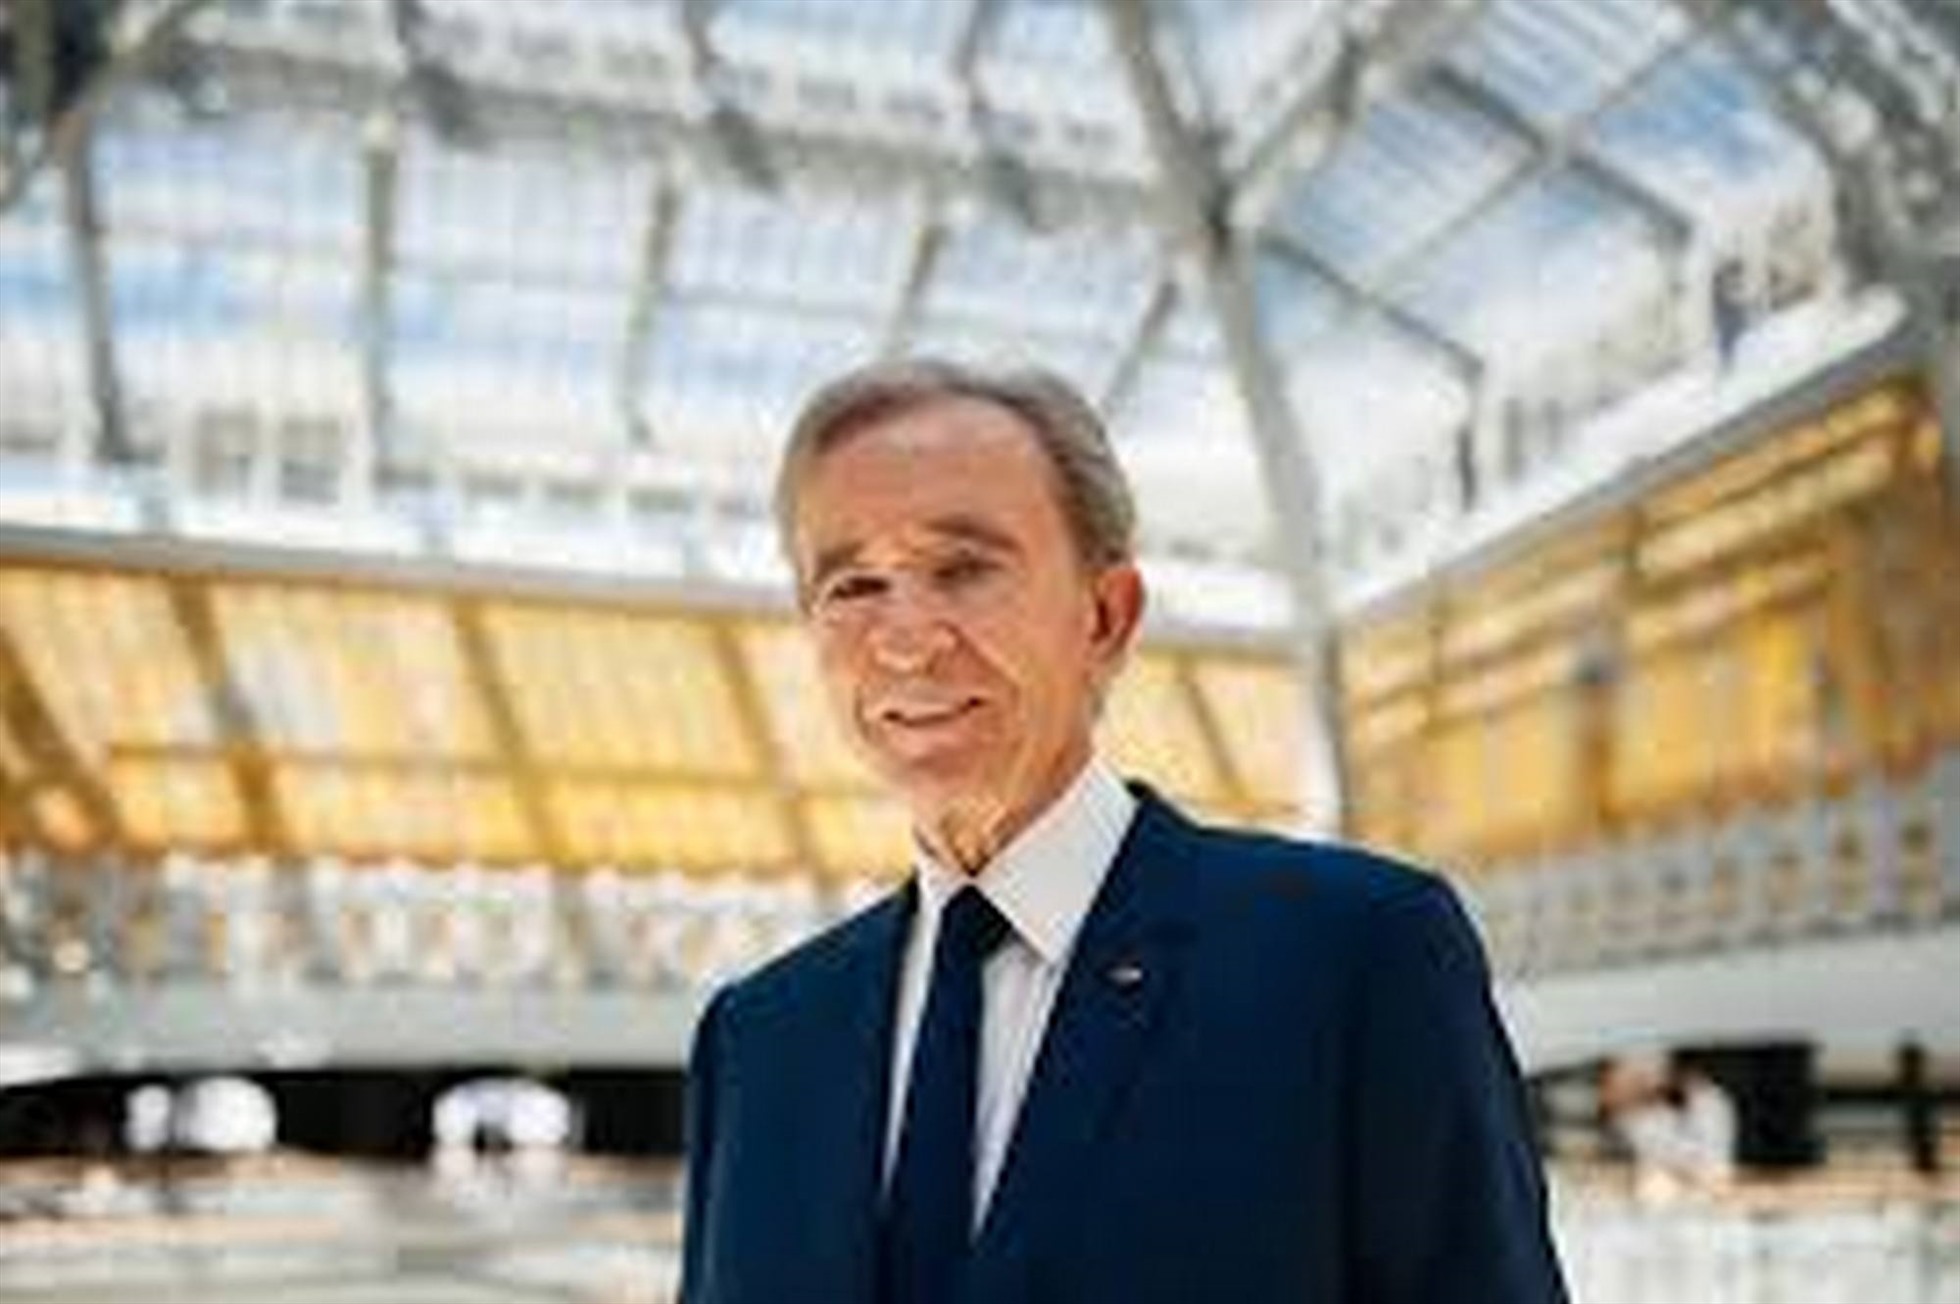 “Ông chủ” của LVMH là tỉ phú Bernard Arnault ở vị trí dẫn đầu và là người duy nhất có tài sản trên 200 tỉ USD trên bảng xếp hạng quốc tế. Ảnh: DN cung cấp